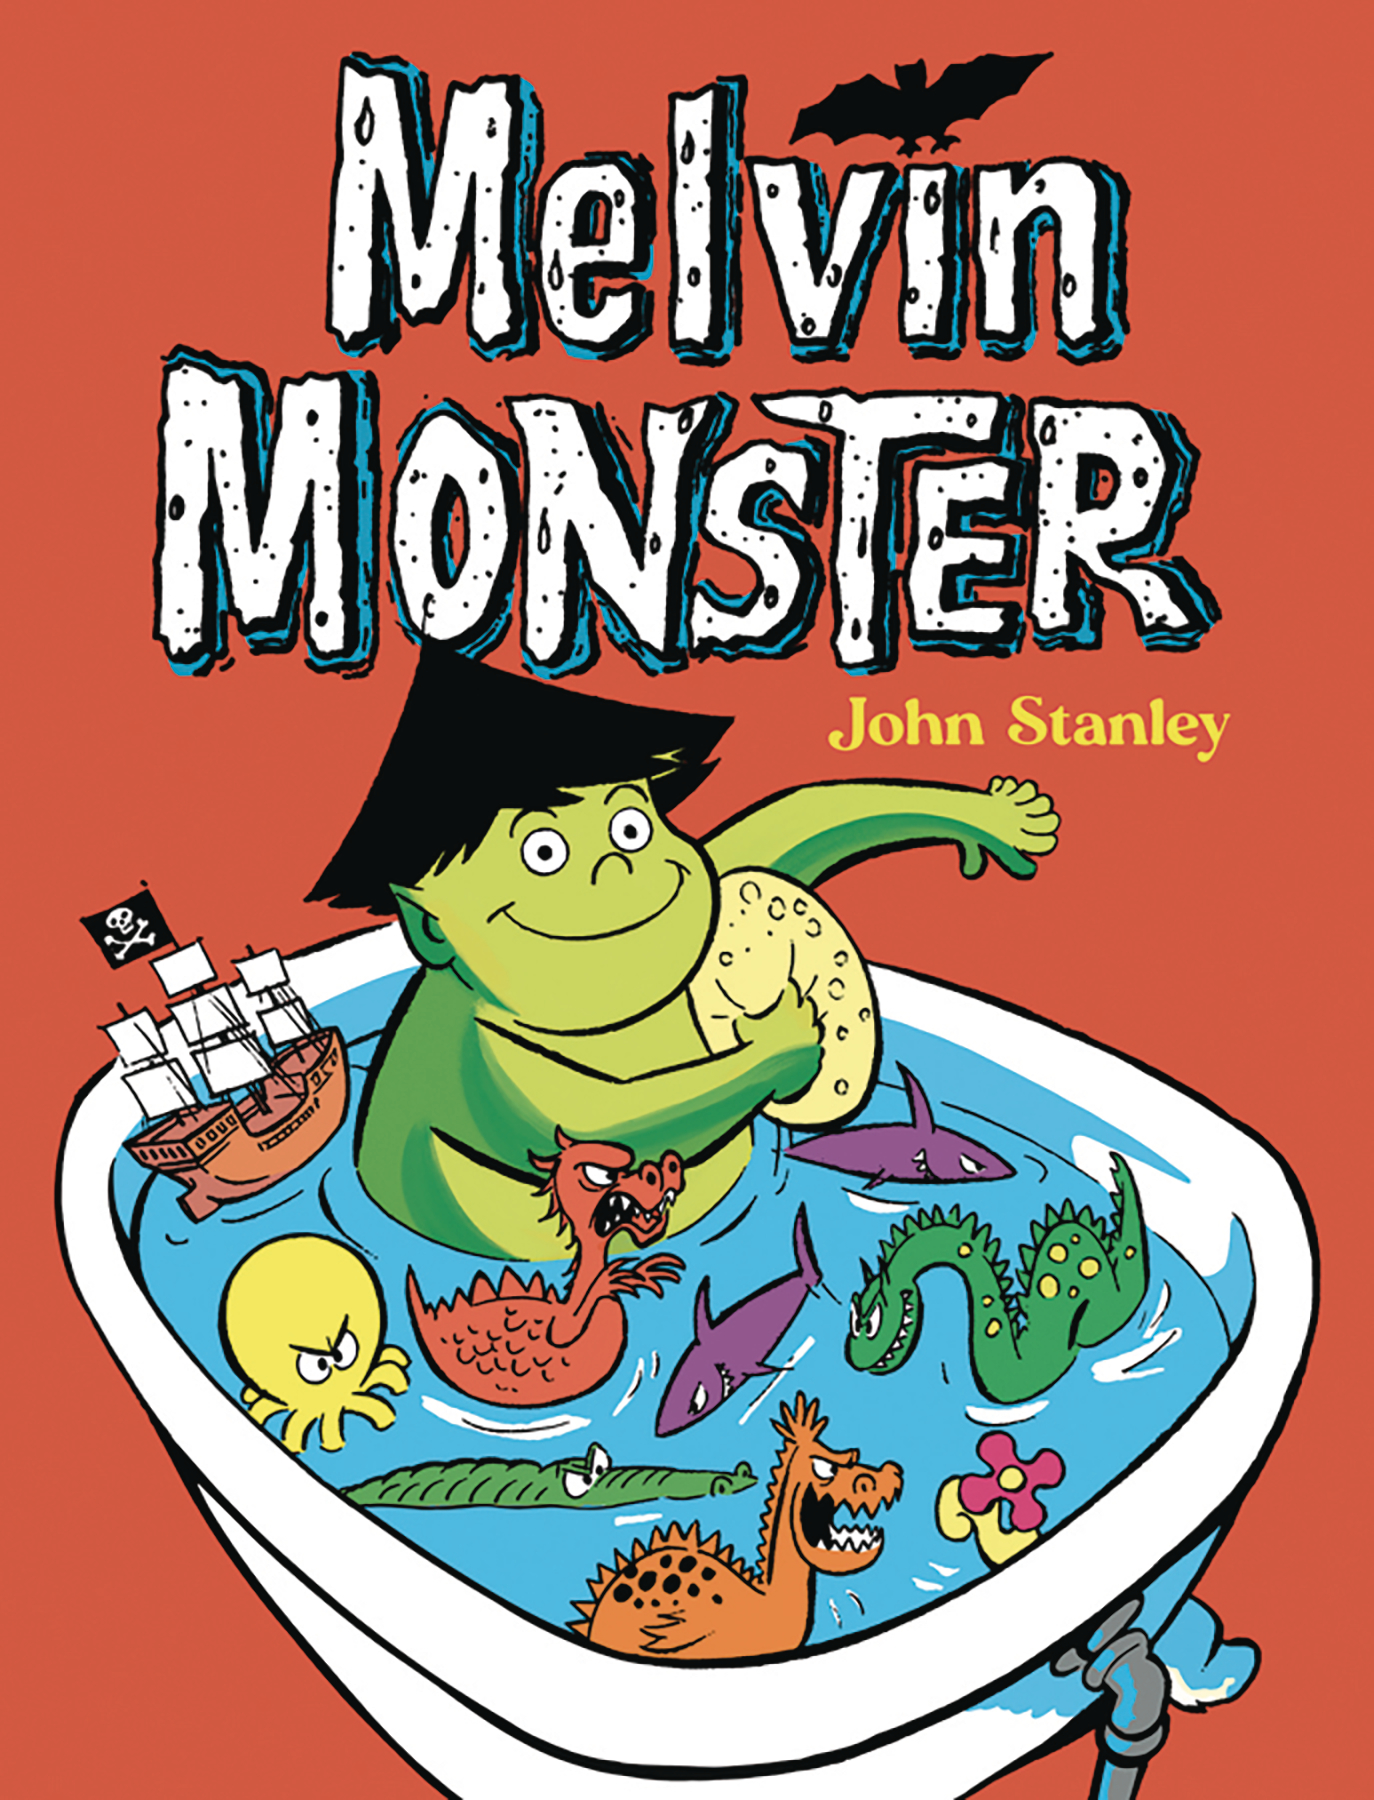 Melvin Monster Graphic Novel